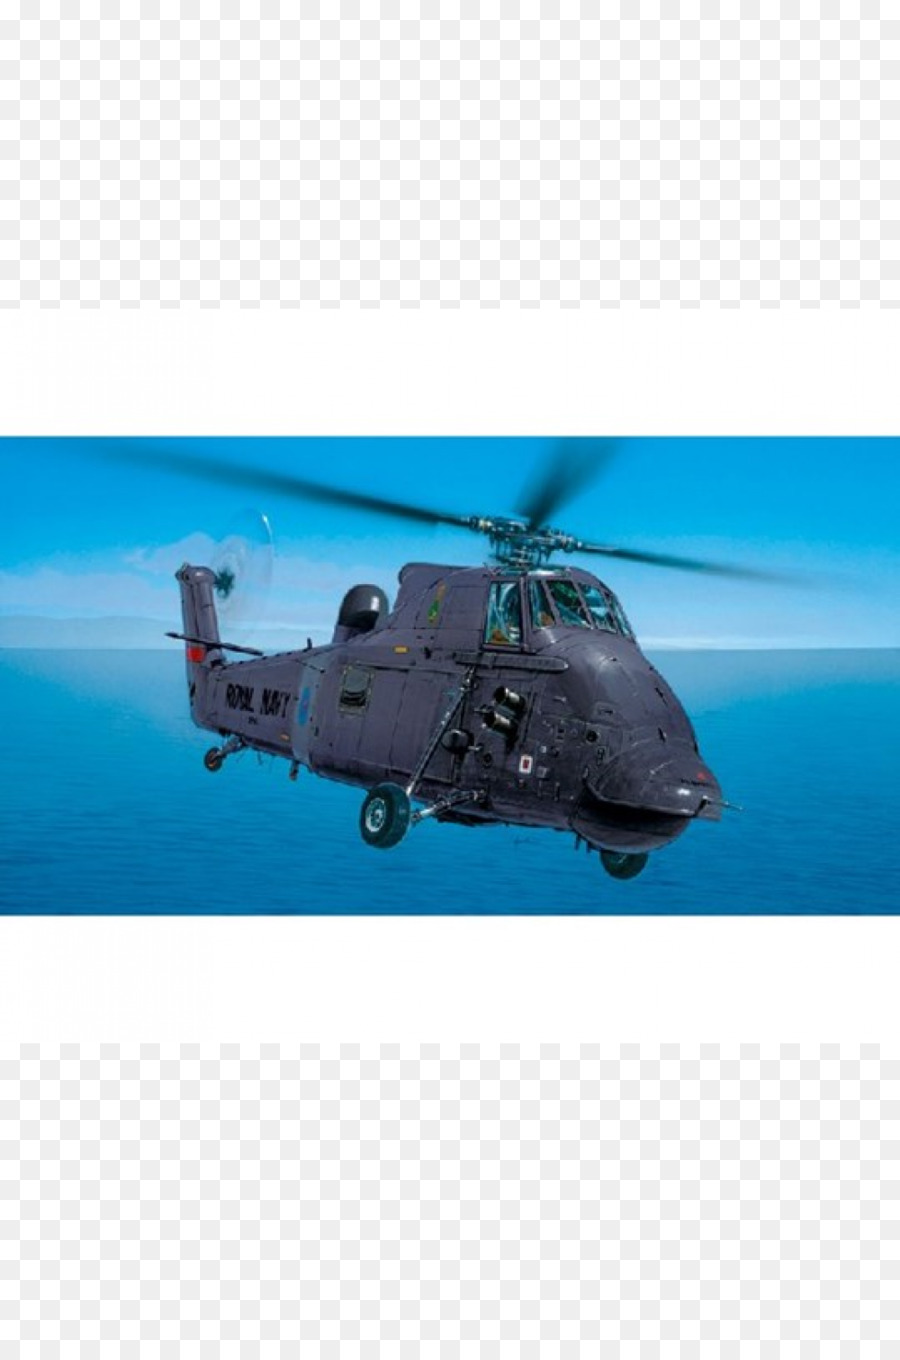 Plymouth Ty máy bay trực Thăng, một UH-60 Black Hawk Chiếc H-34 máy Bay - Máy bay trực thăng